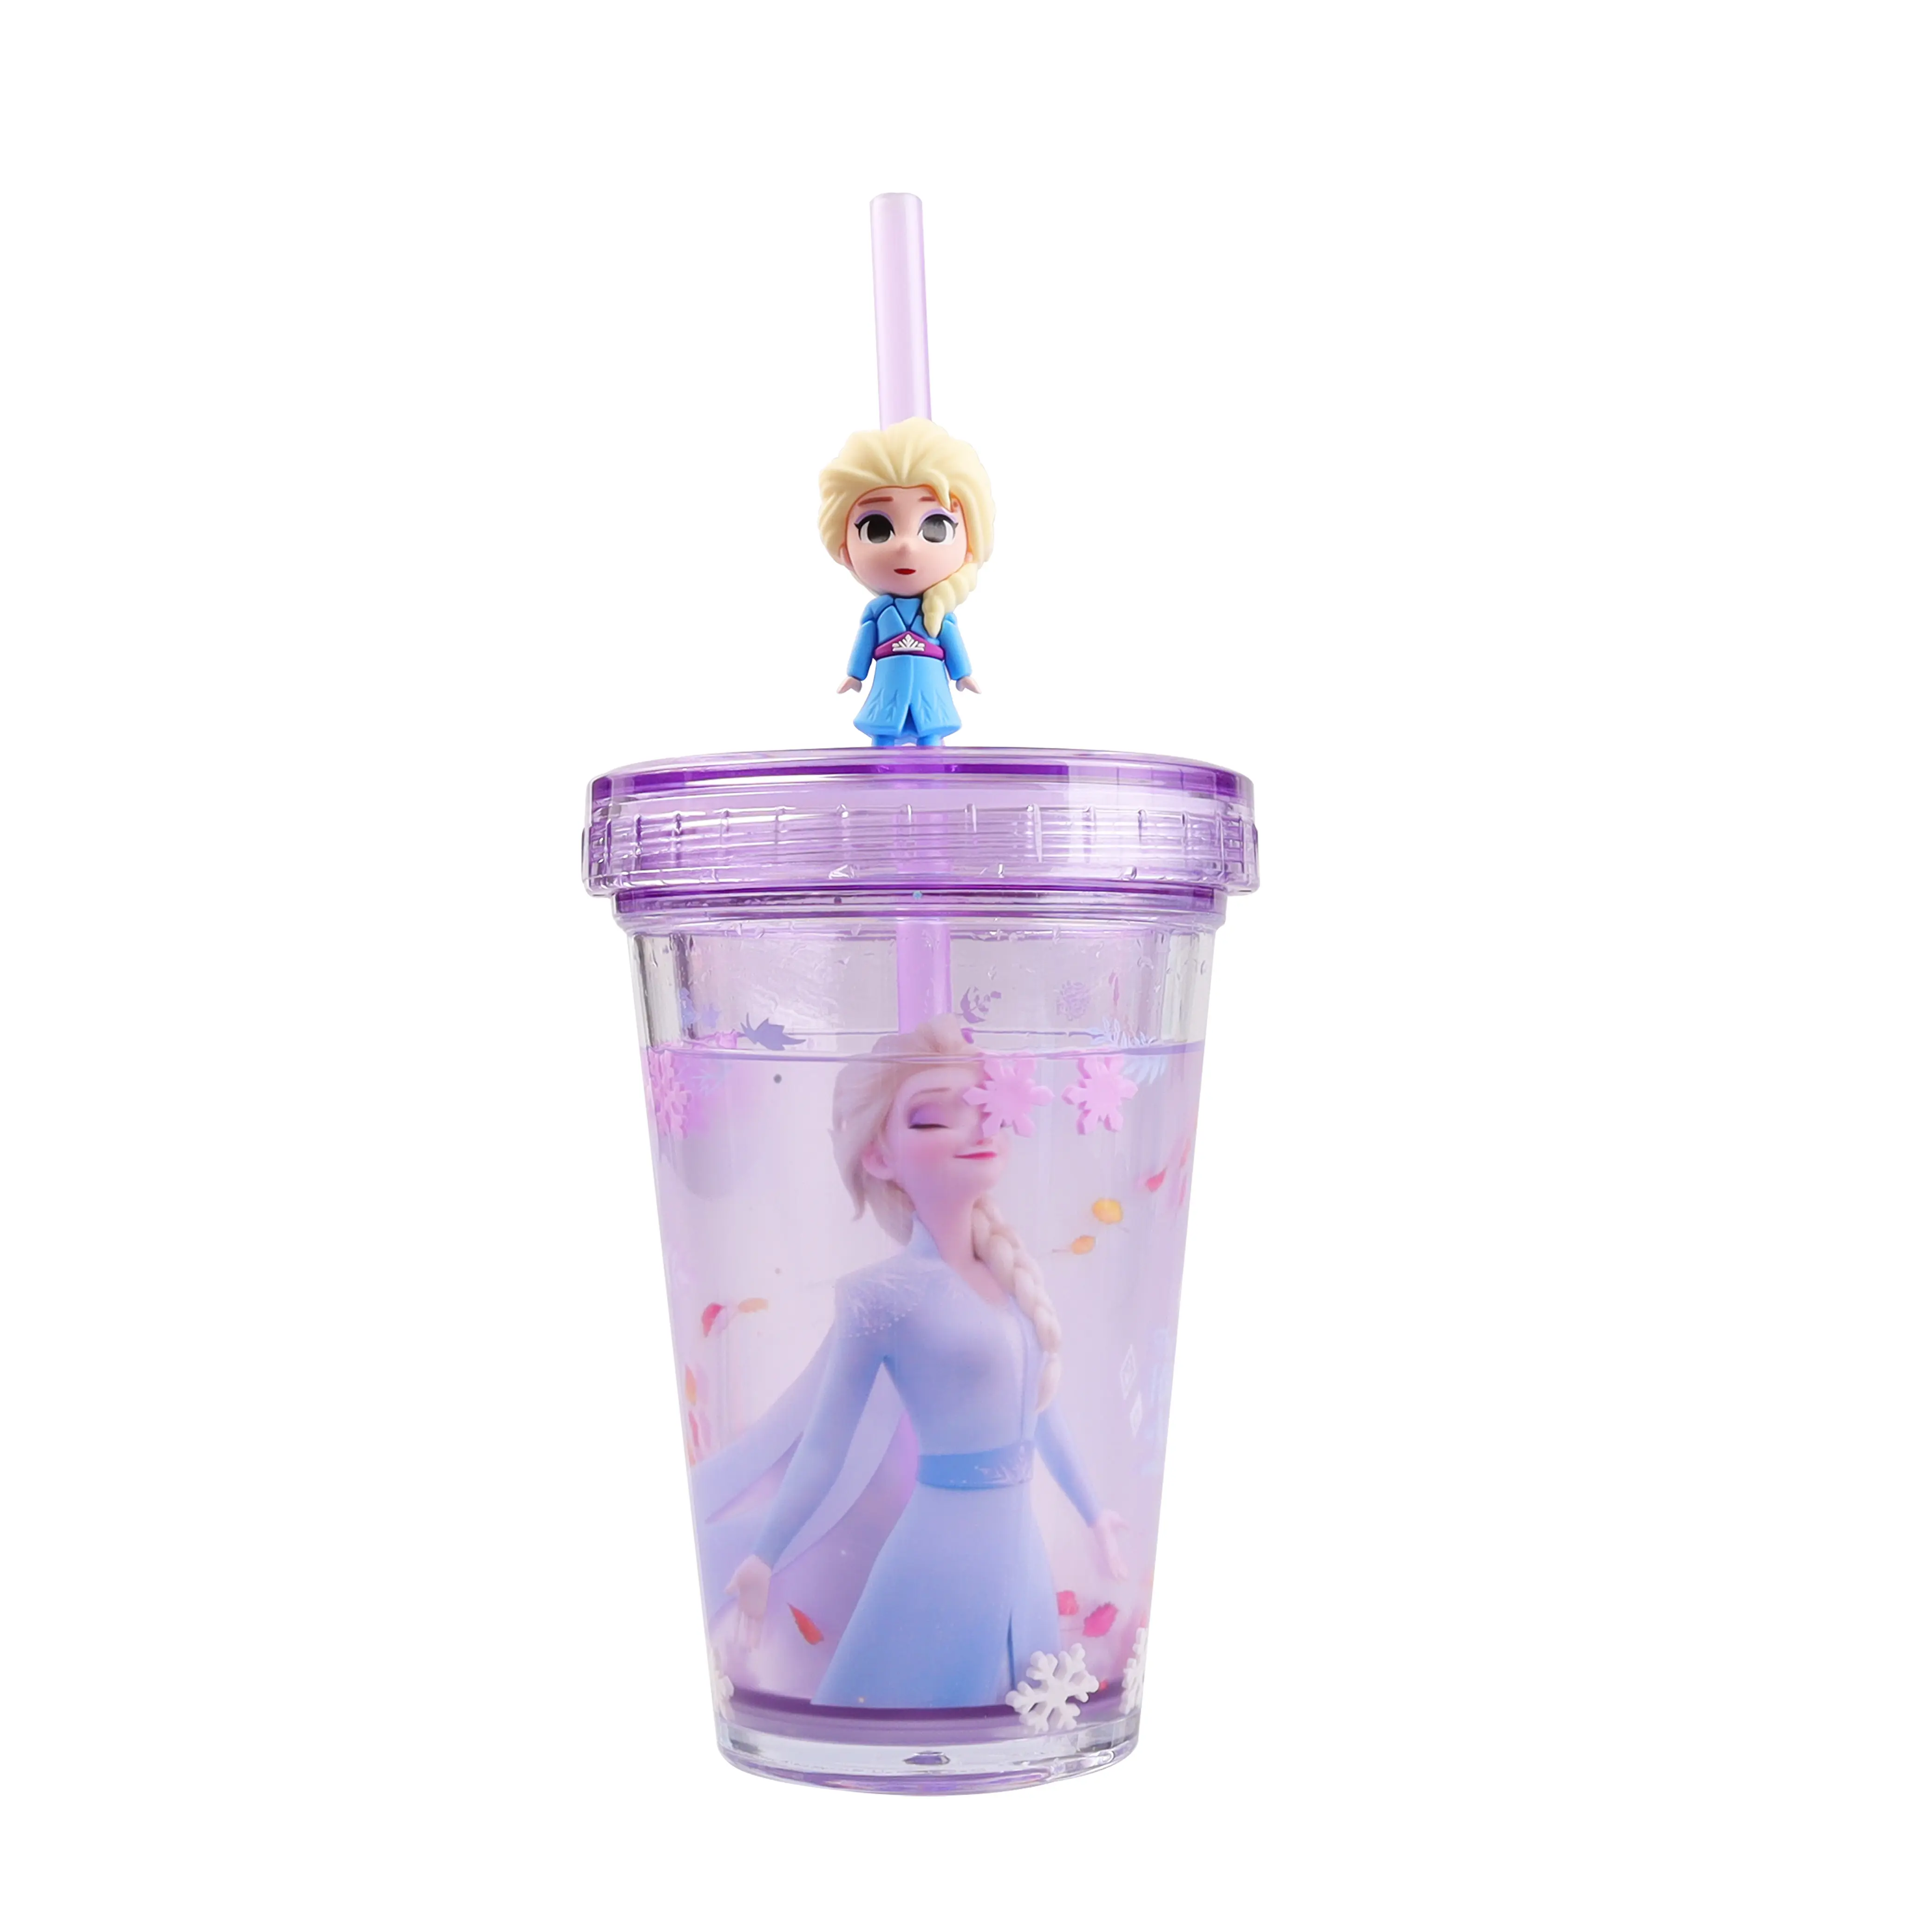 Tasse d'été Disney Frozen 2 tazas, tasse d'eau pour enfants, belles voitures pour enfants, tasse flottante en paille 3D